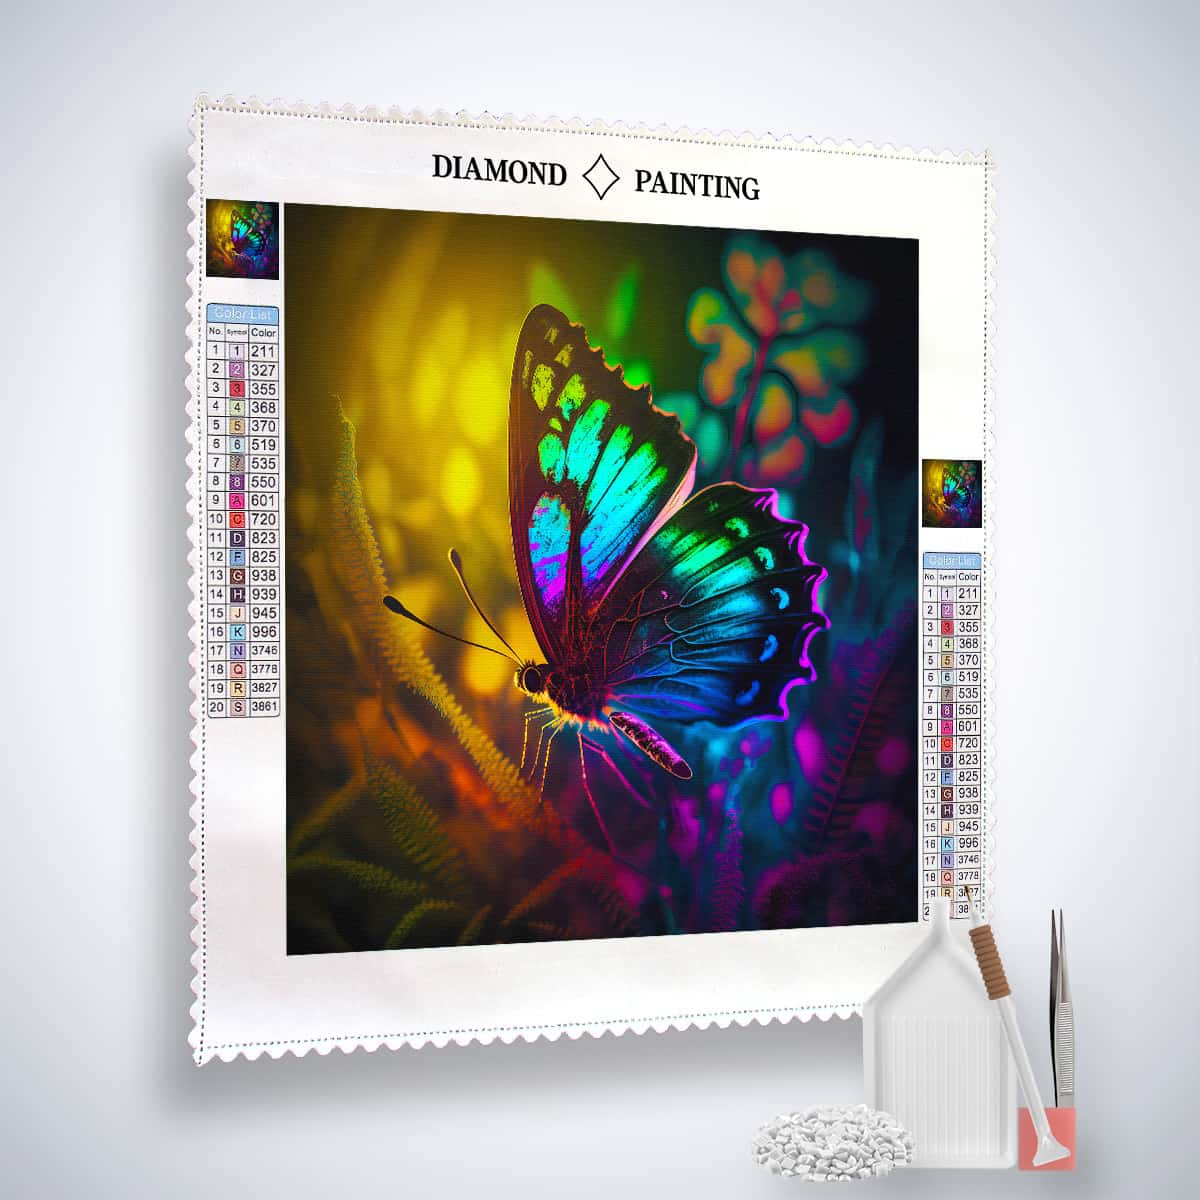 Diamond Painting - Schmetterling bei Nacht - gedruckt in Ultra-HD - Neu eingetroffen, Quadratisch, Schmetterling, Tiere